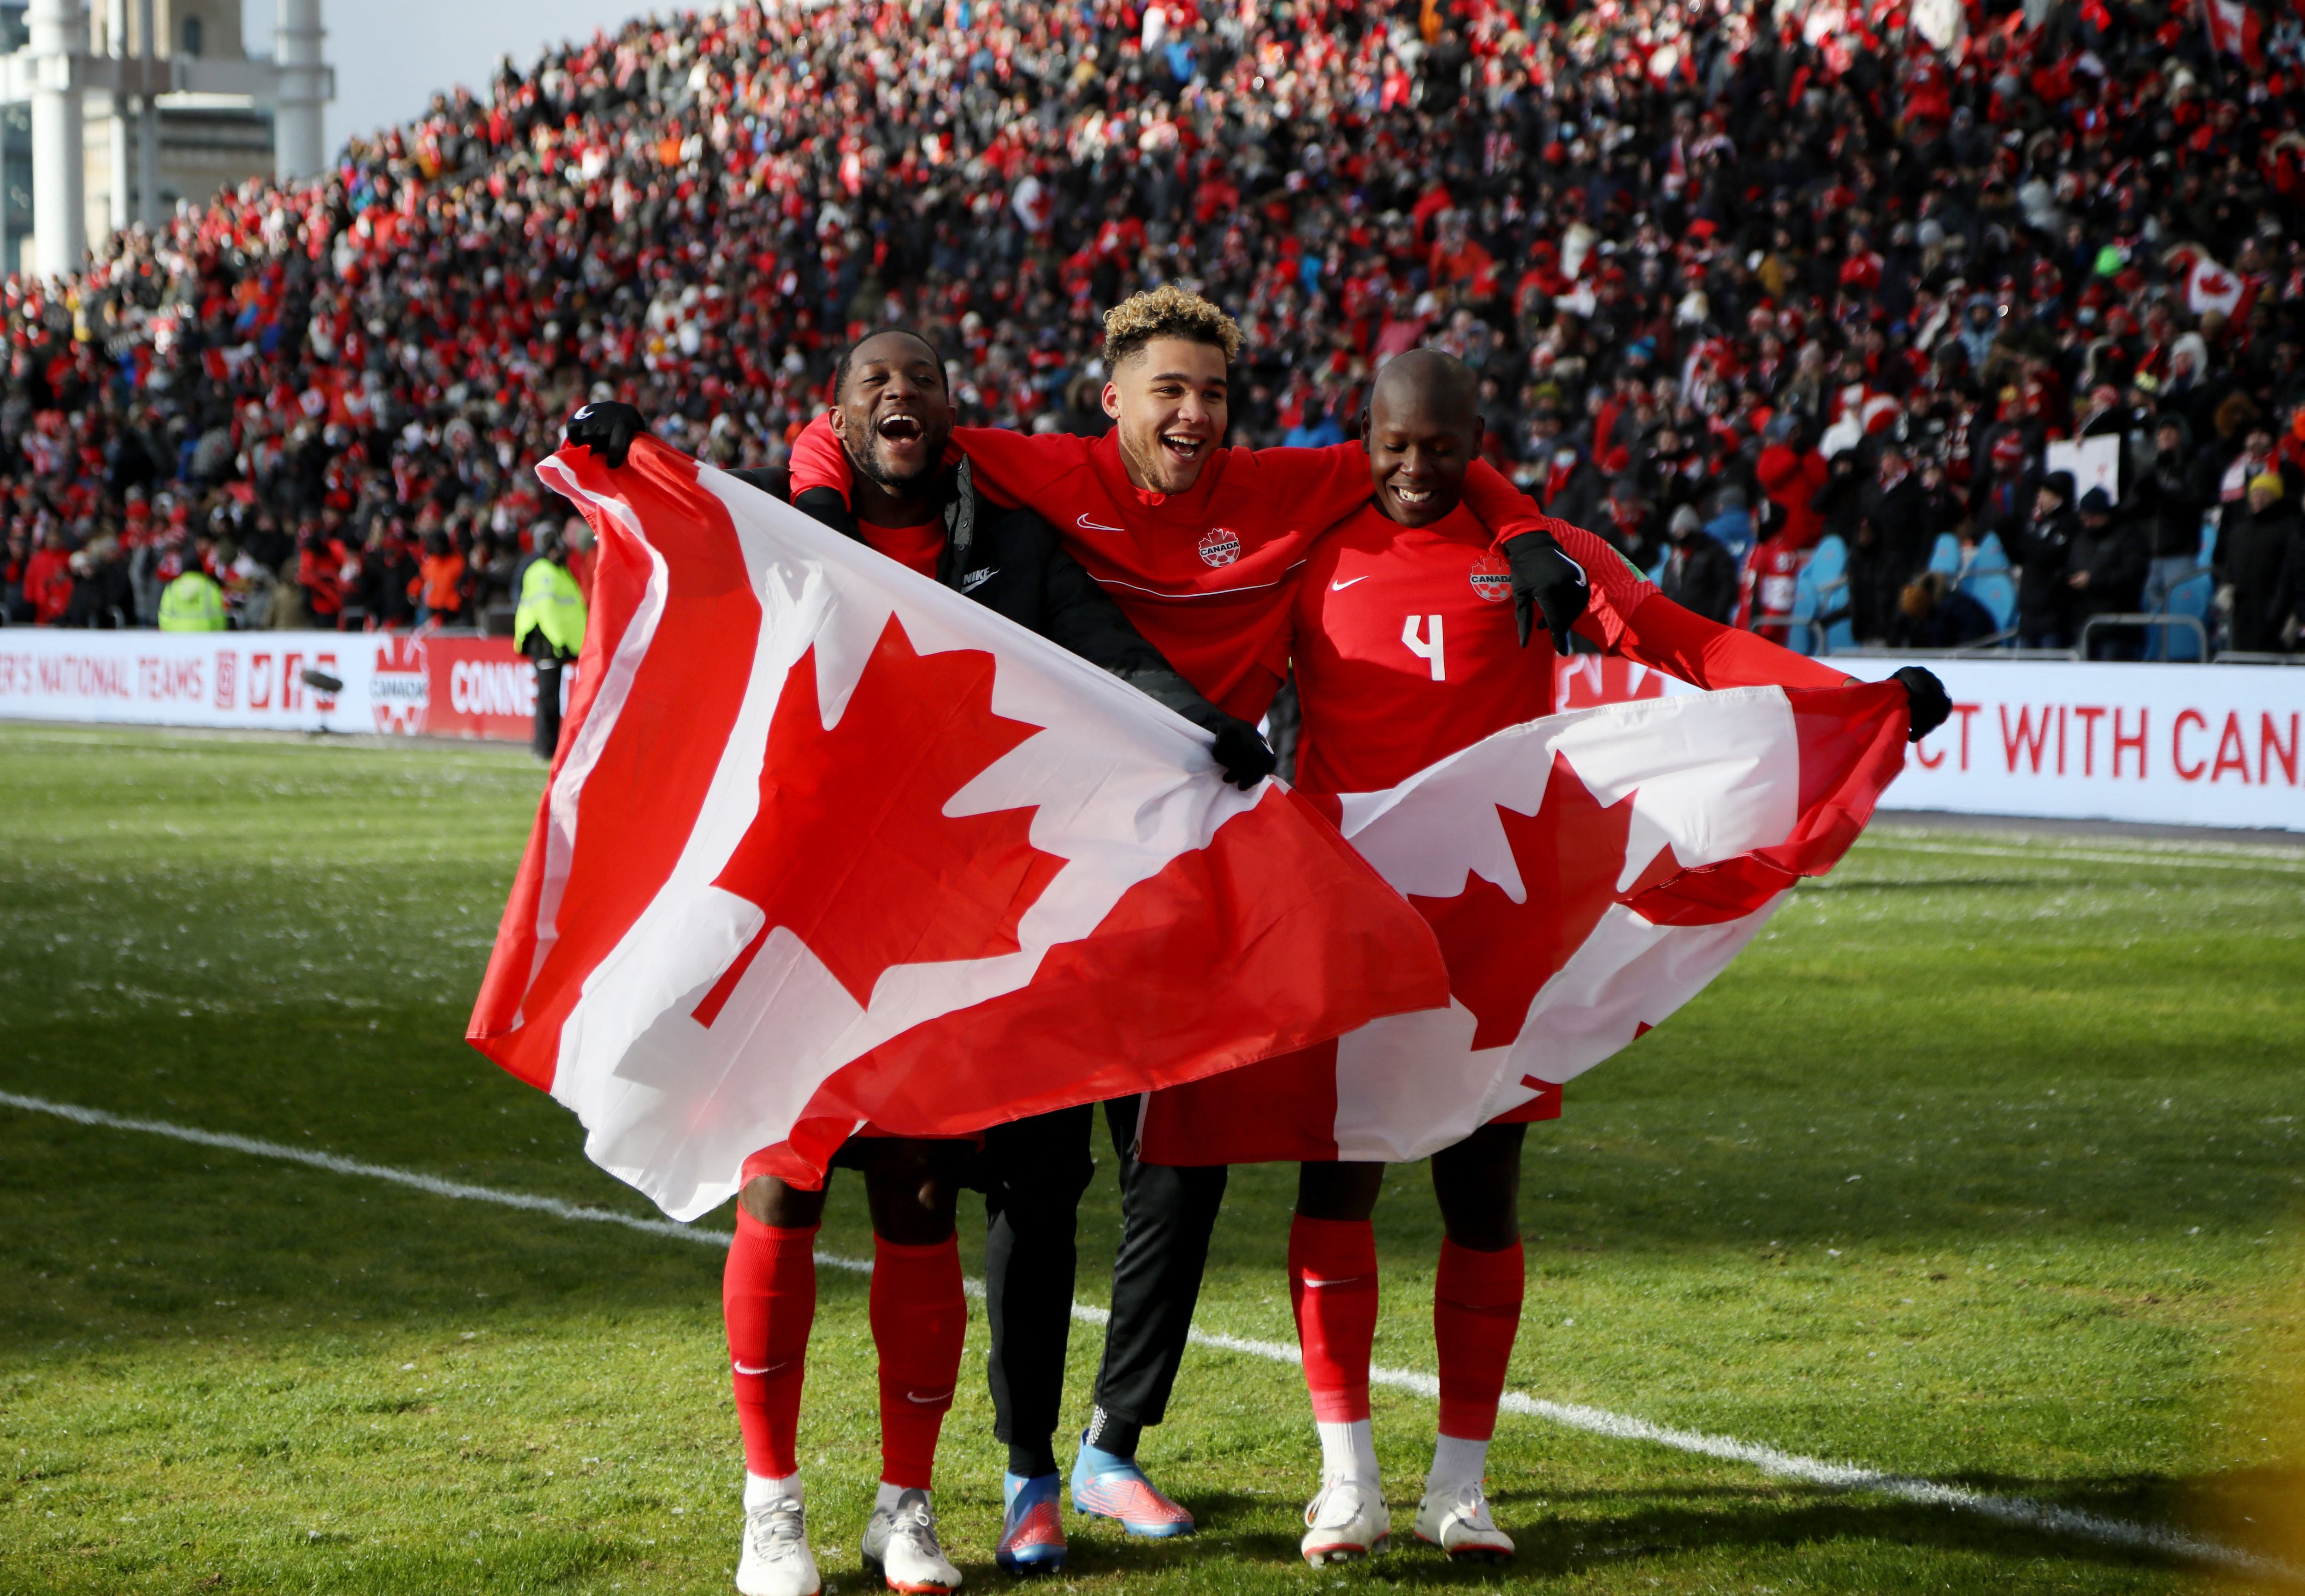 Jugadores de Canadá festejan con la bandera de su país la clasificación al Mundial después de 36 años. Estadio BMO Field, Toronto, Canadá. 27 de marzo de 2022.
REUTERS/Carlos Osorio